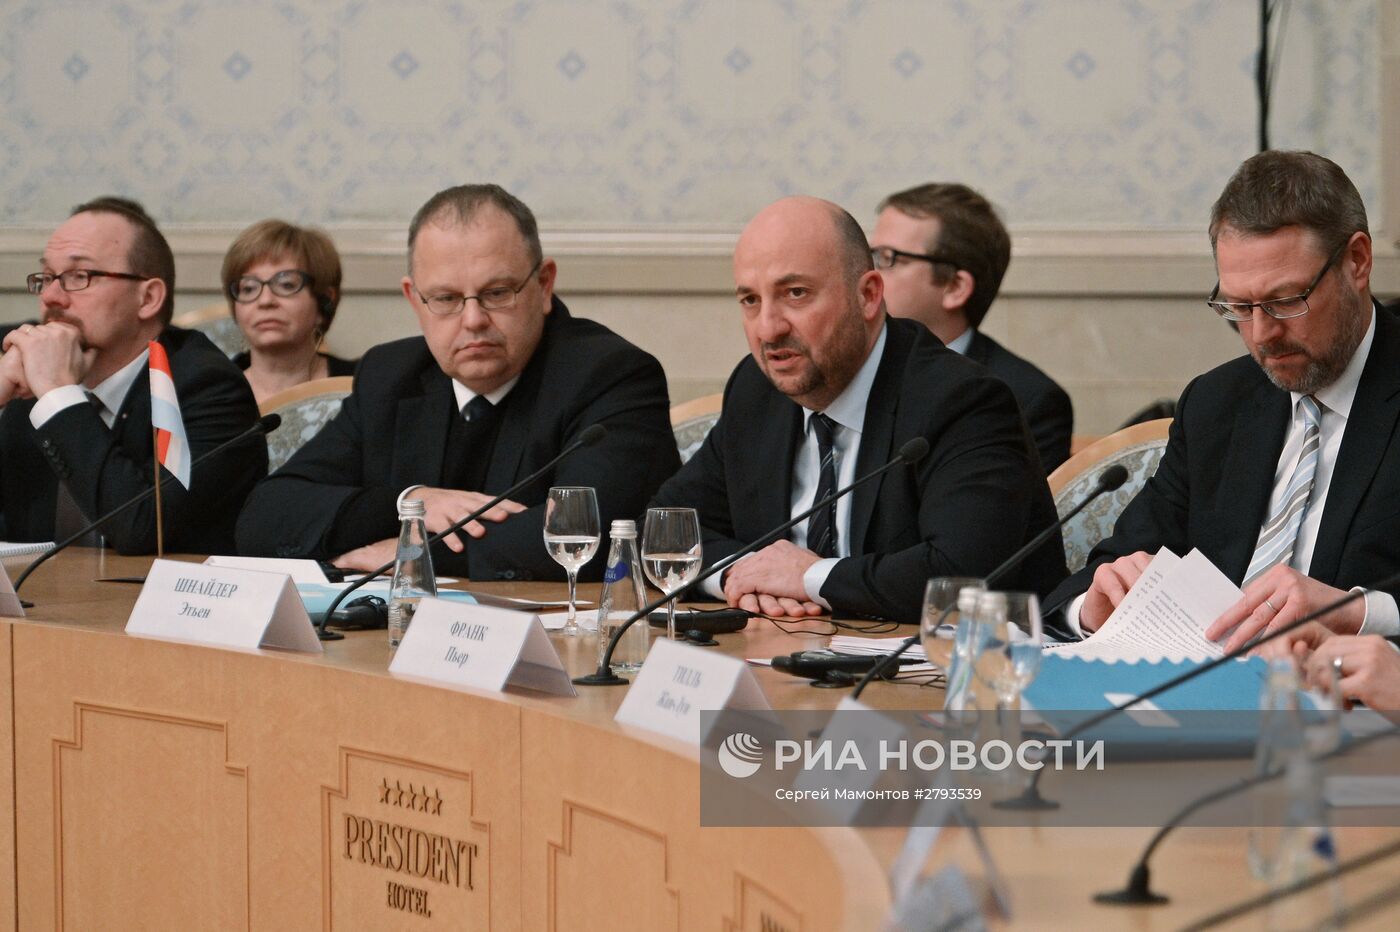 Заседание комиссии по экономическому сотрудничеству России и Бельгийско-Люксембургского экономического союза